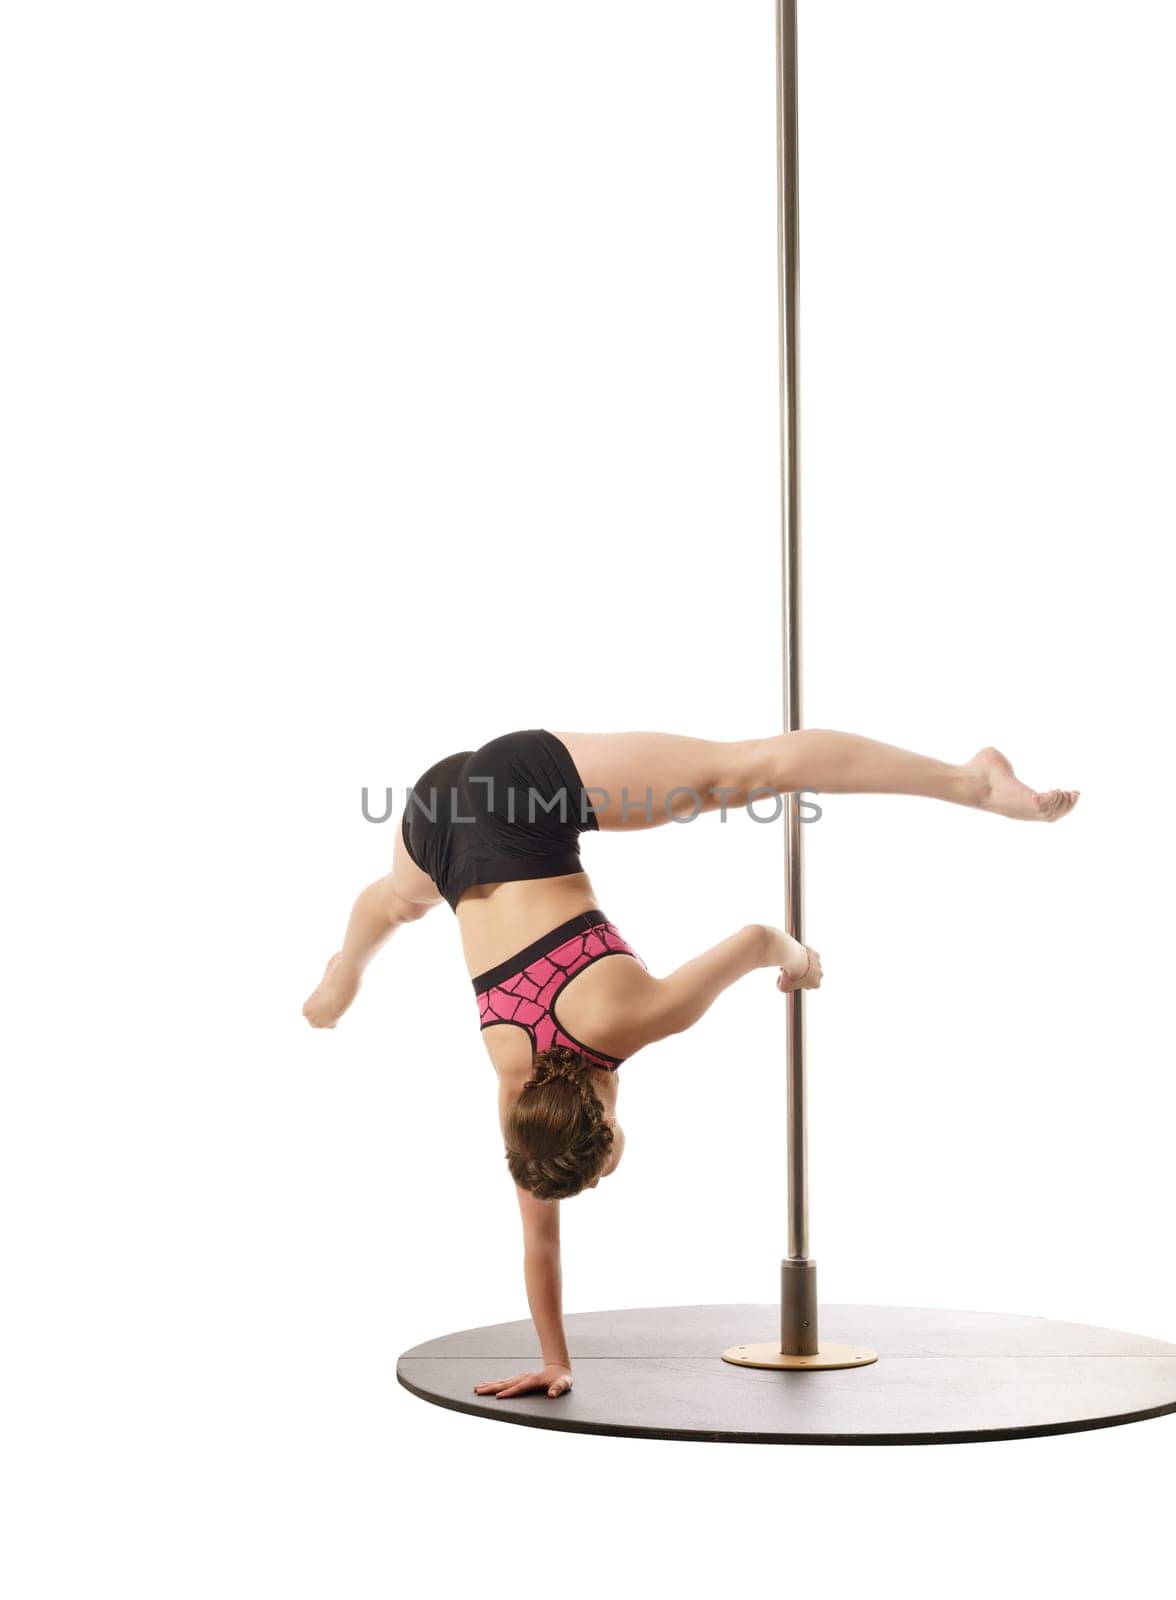 Studio photo of flexible female athlete training on pylon